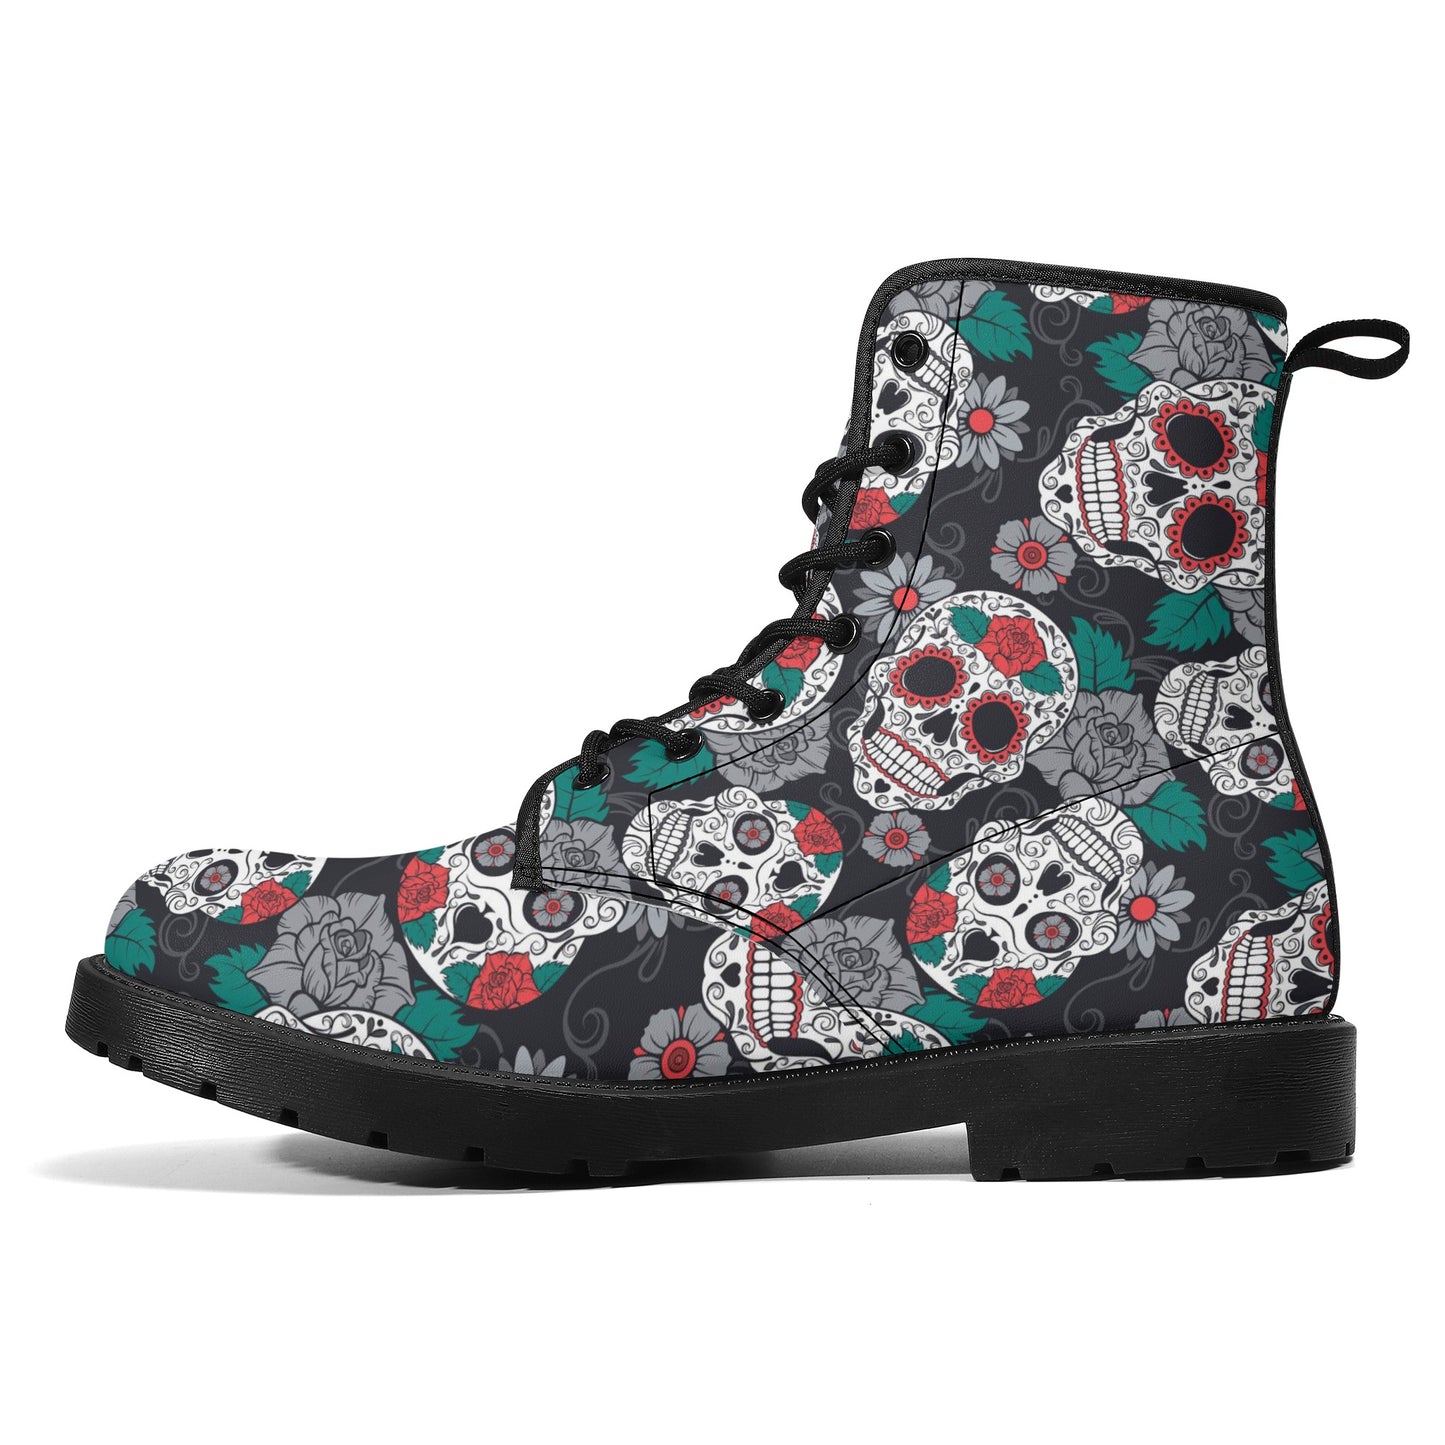 Sugar skull Calaveras skull Women's Leather Boots